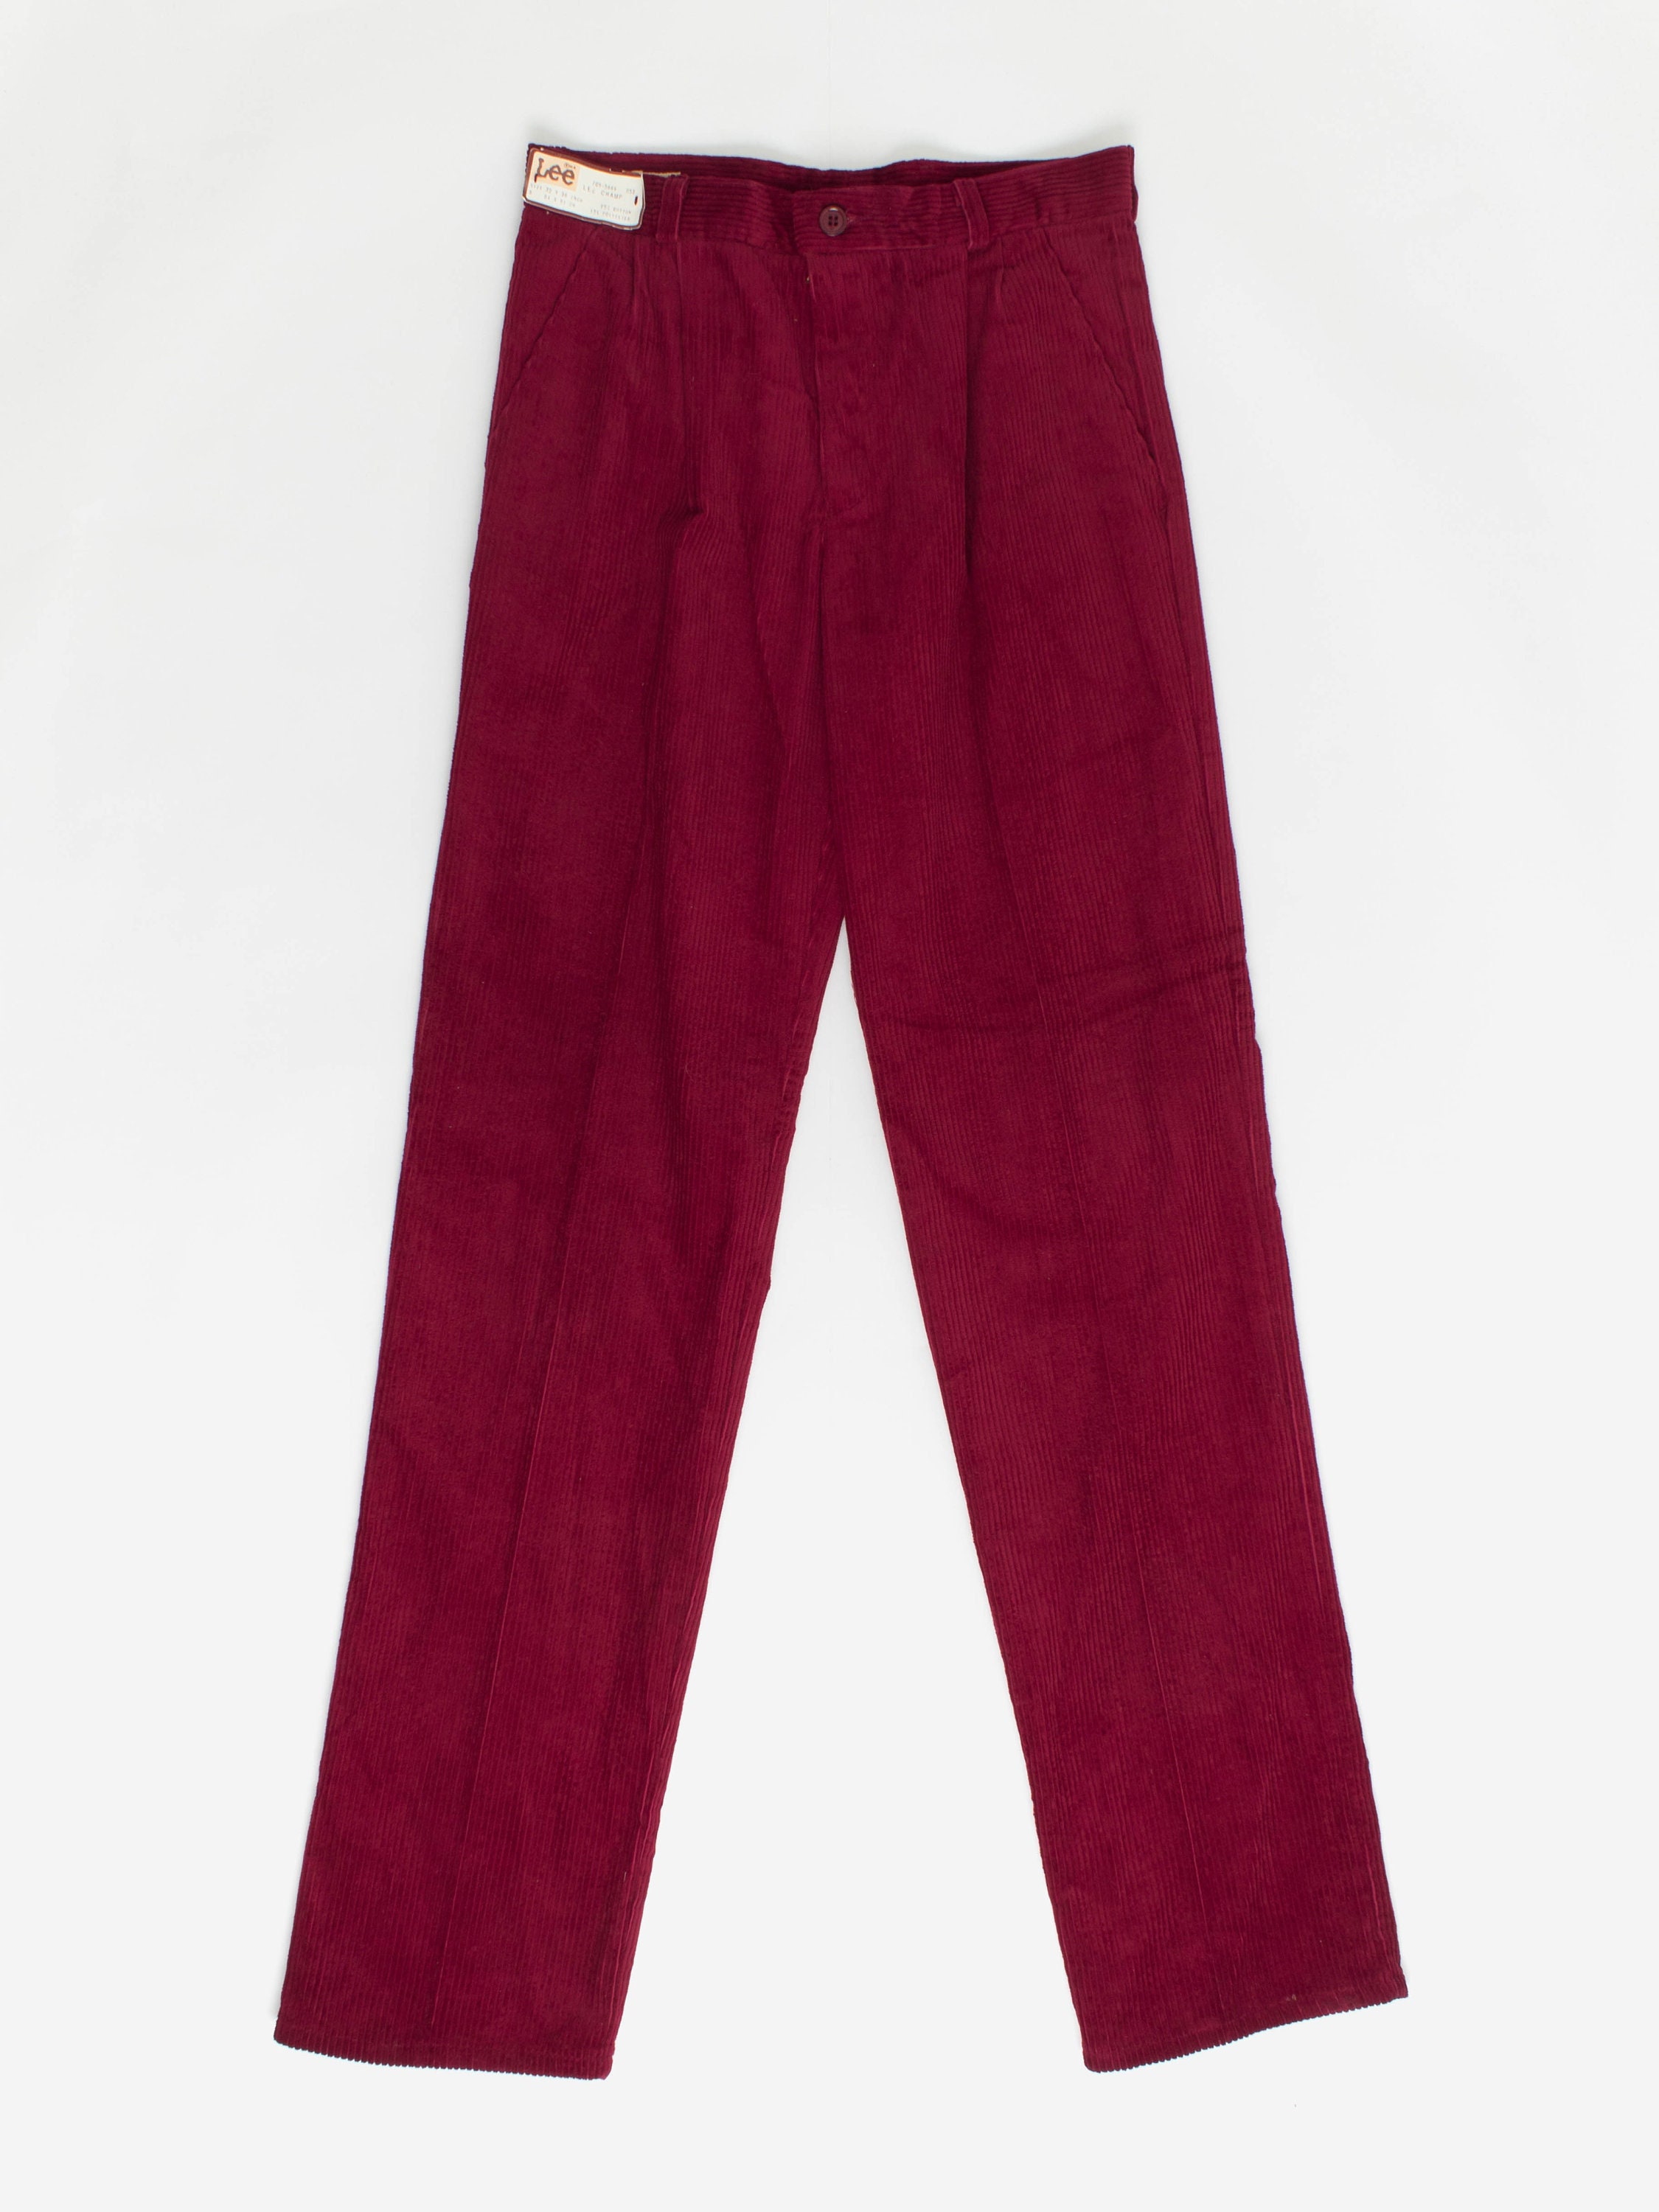 Red Corduroy Pants -  UK